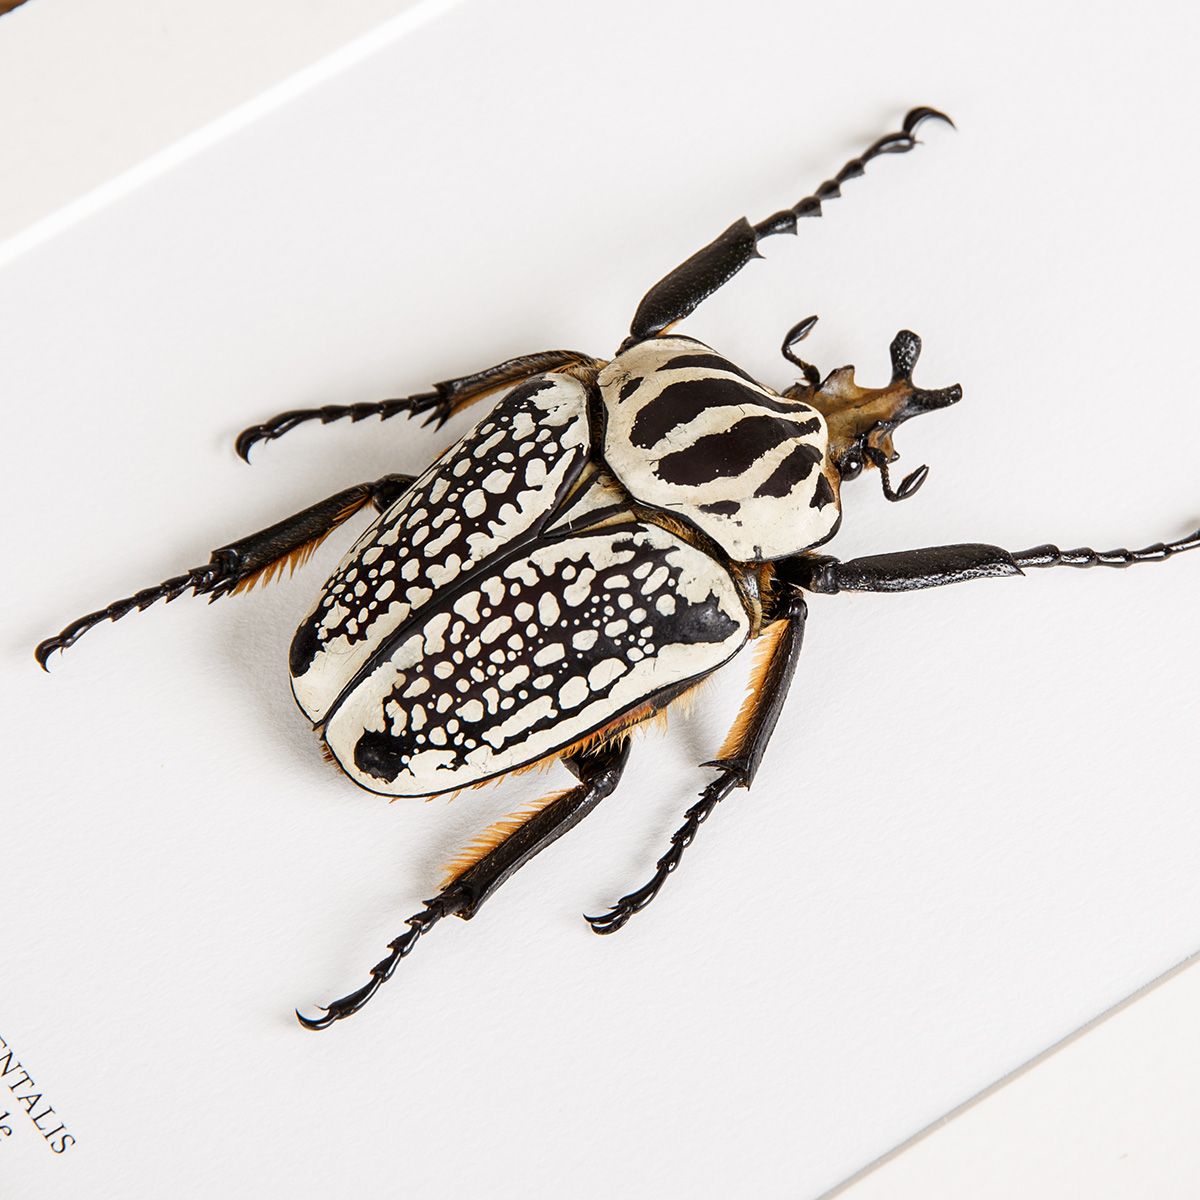 Giant Goliath Beetle in Box Frame (Goliathus orientalis)